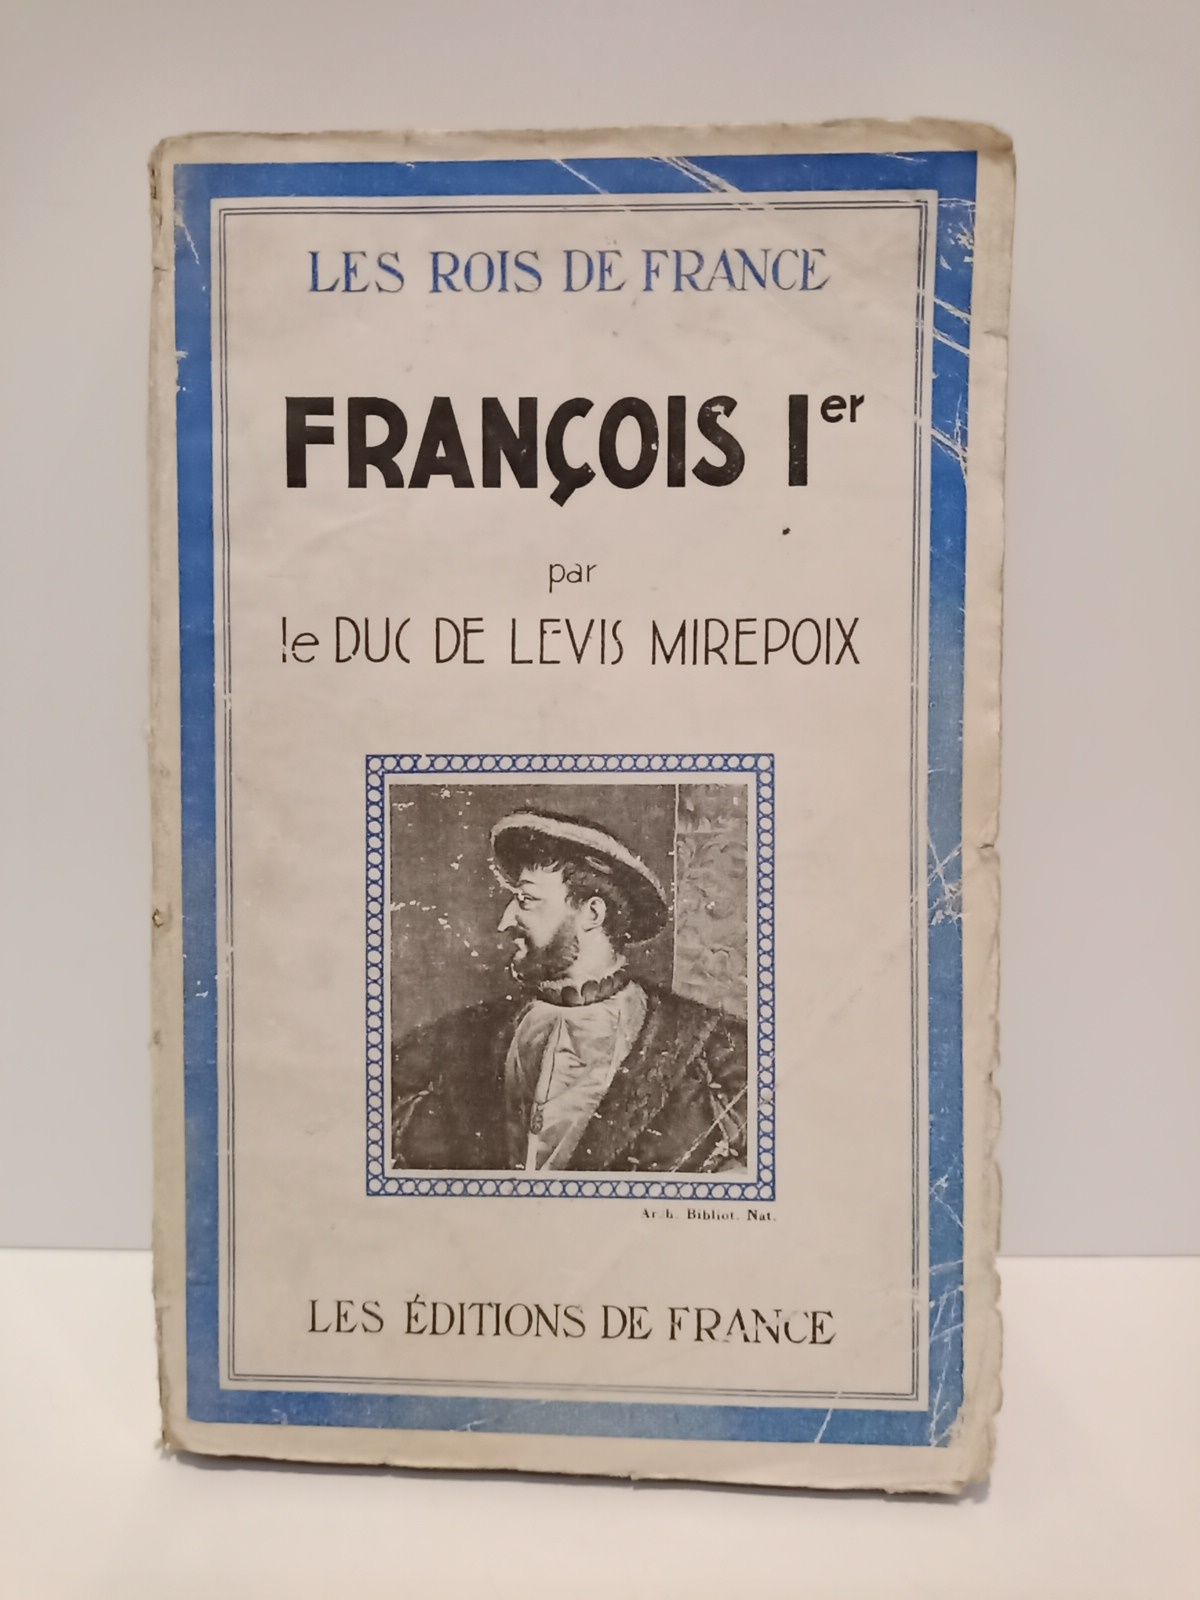 MIREPOIX LEVIS, Duc de - Franois I